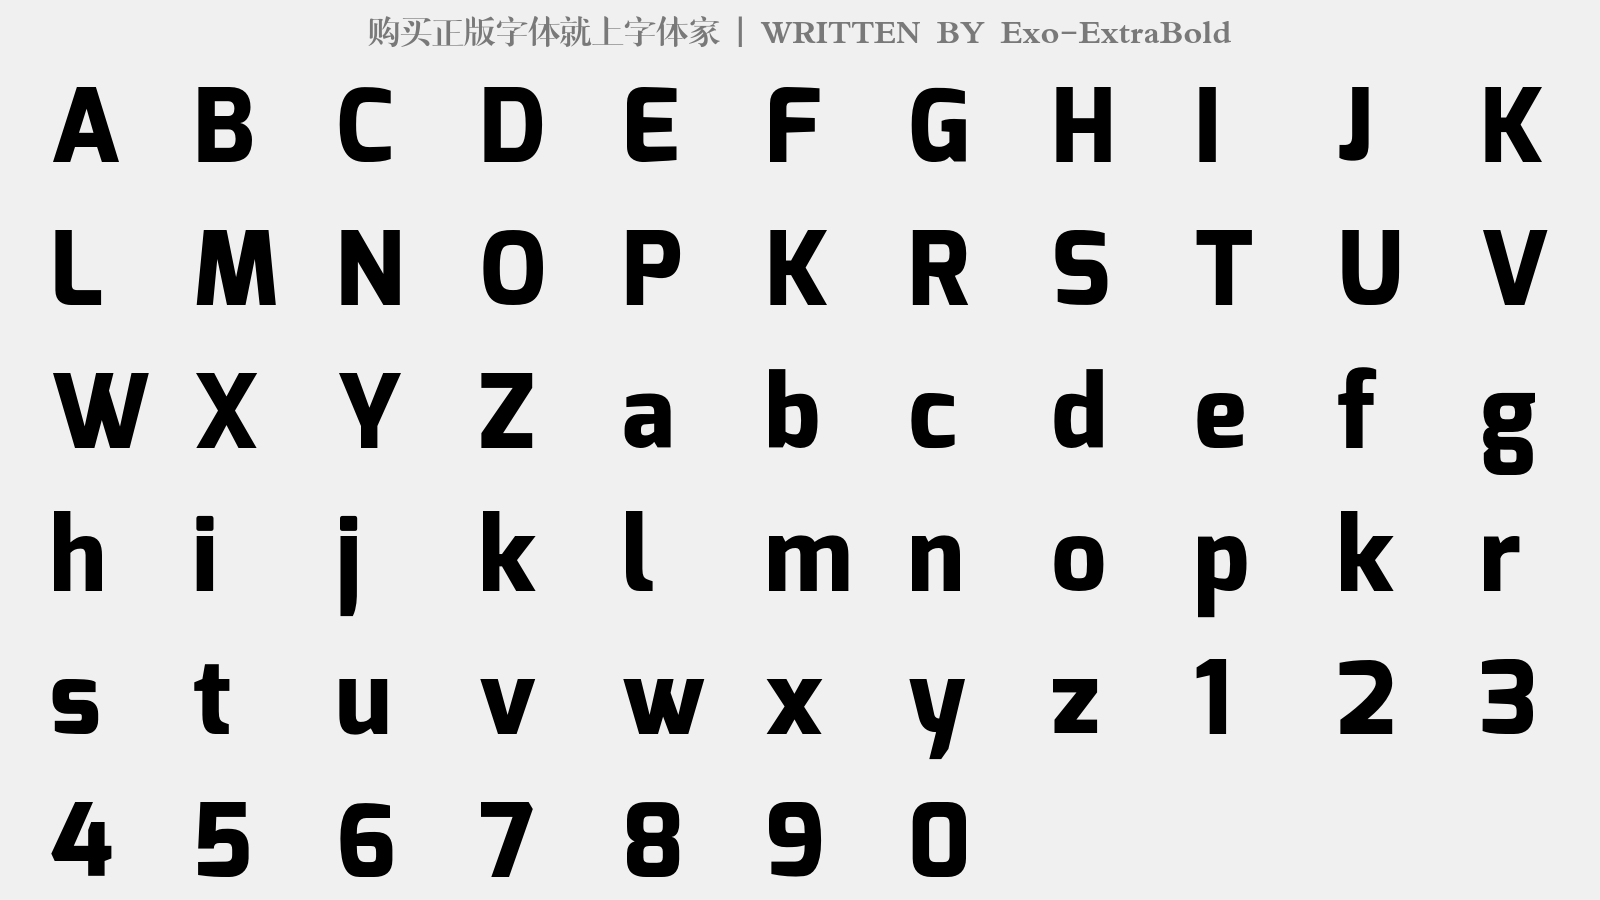 Exo-ExtraBold - 大写字母/小写字母/数字